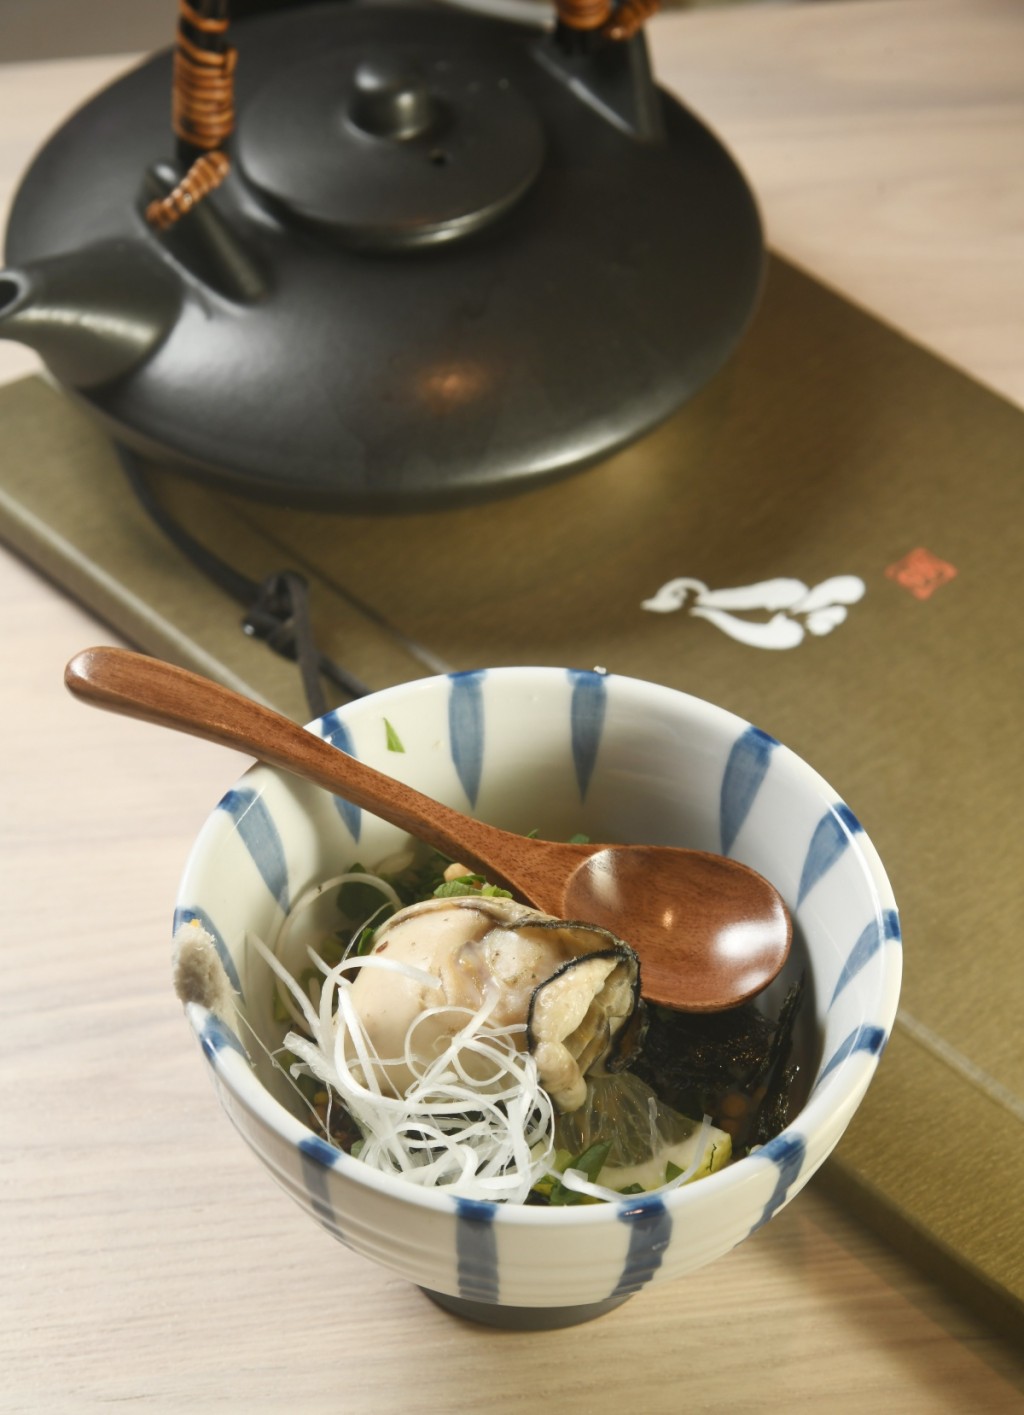 蠣泡茶漬飯，蠔飯配以日本廣島蠔及「牡蠣黃金湯」，吃時拌勻再連湯一起喝下，暖笠笠又滋味。